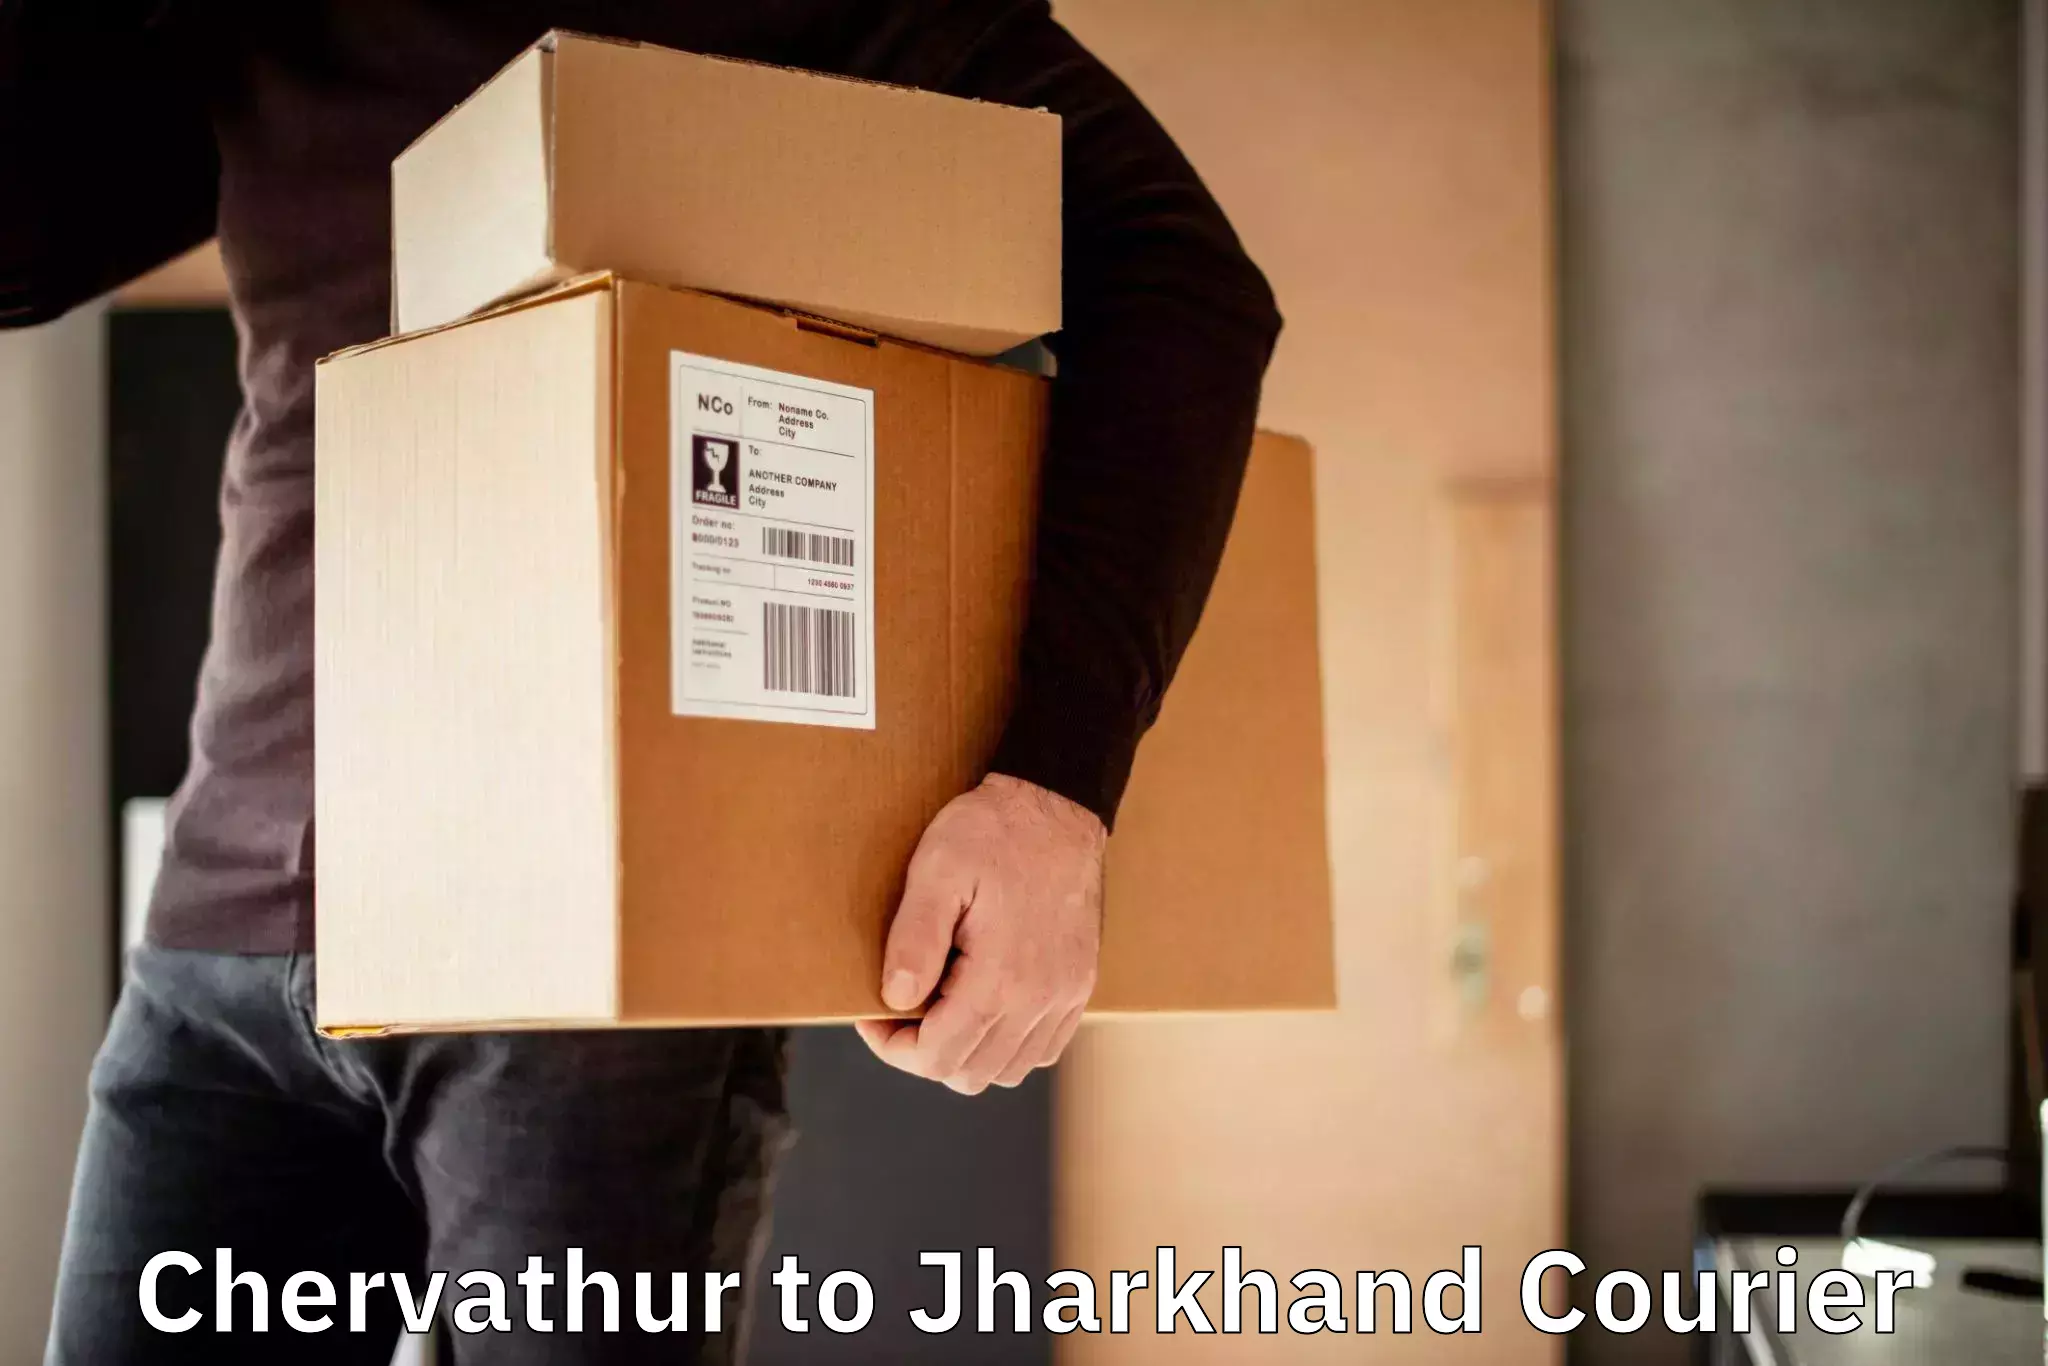 Bulk shipment Chervathur to Padma Hazaribagh